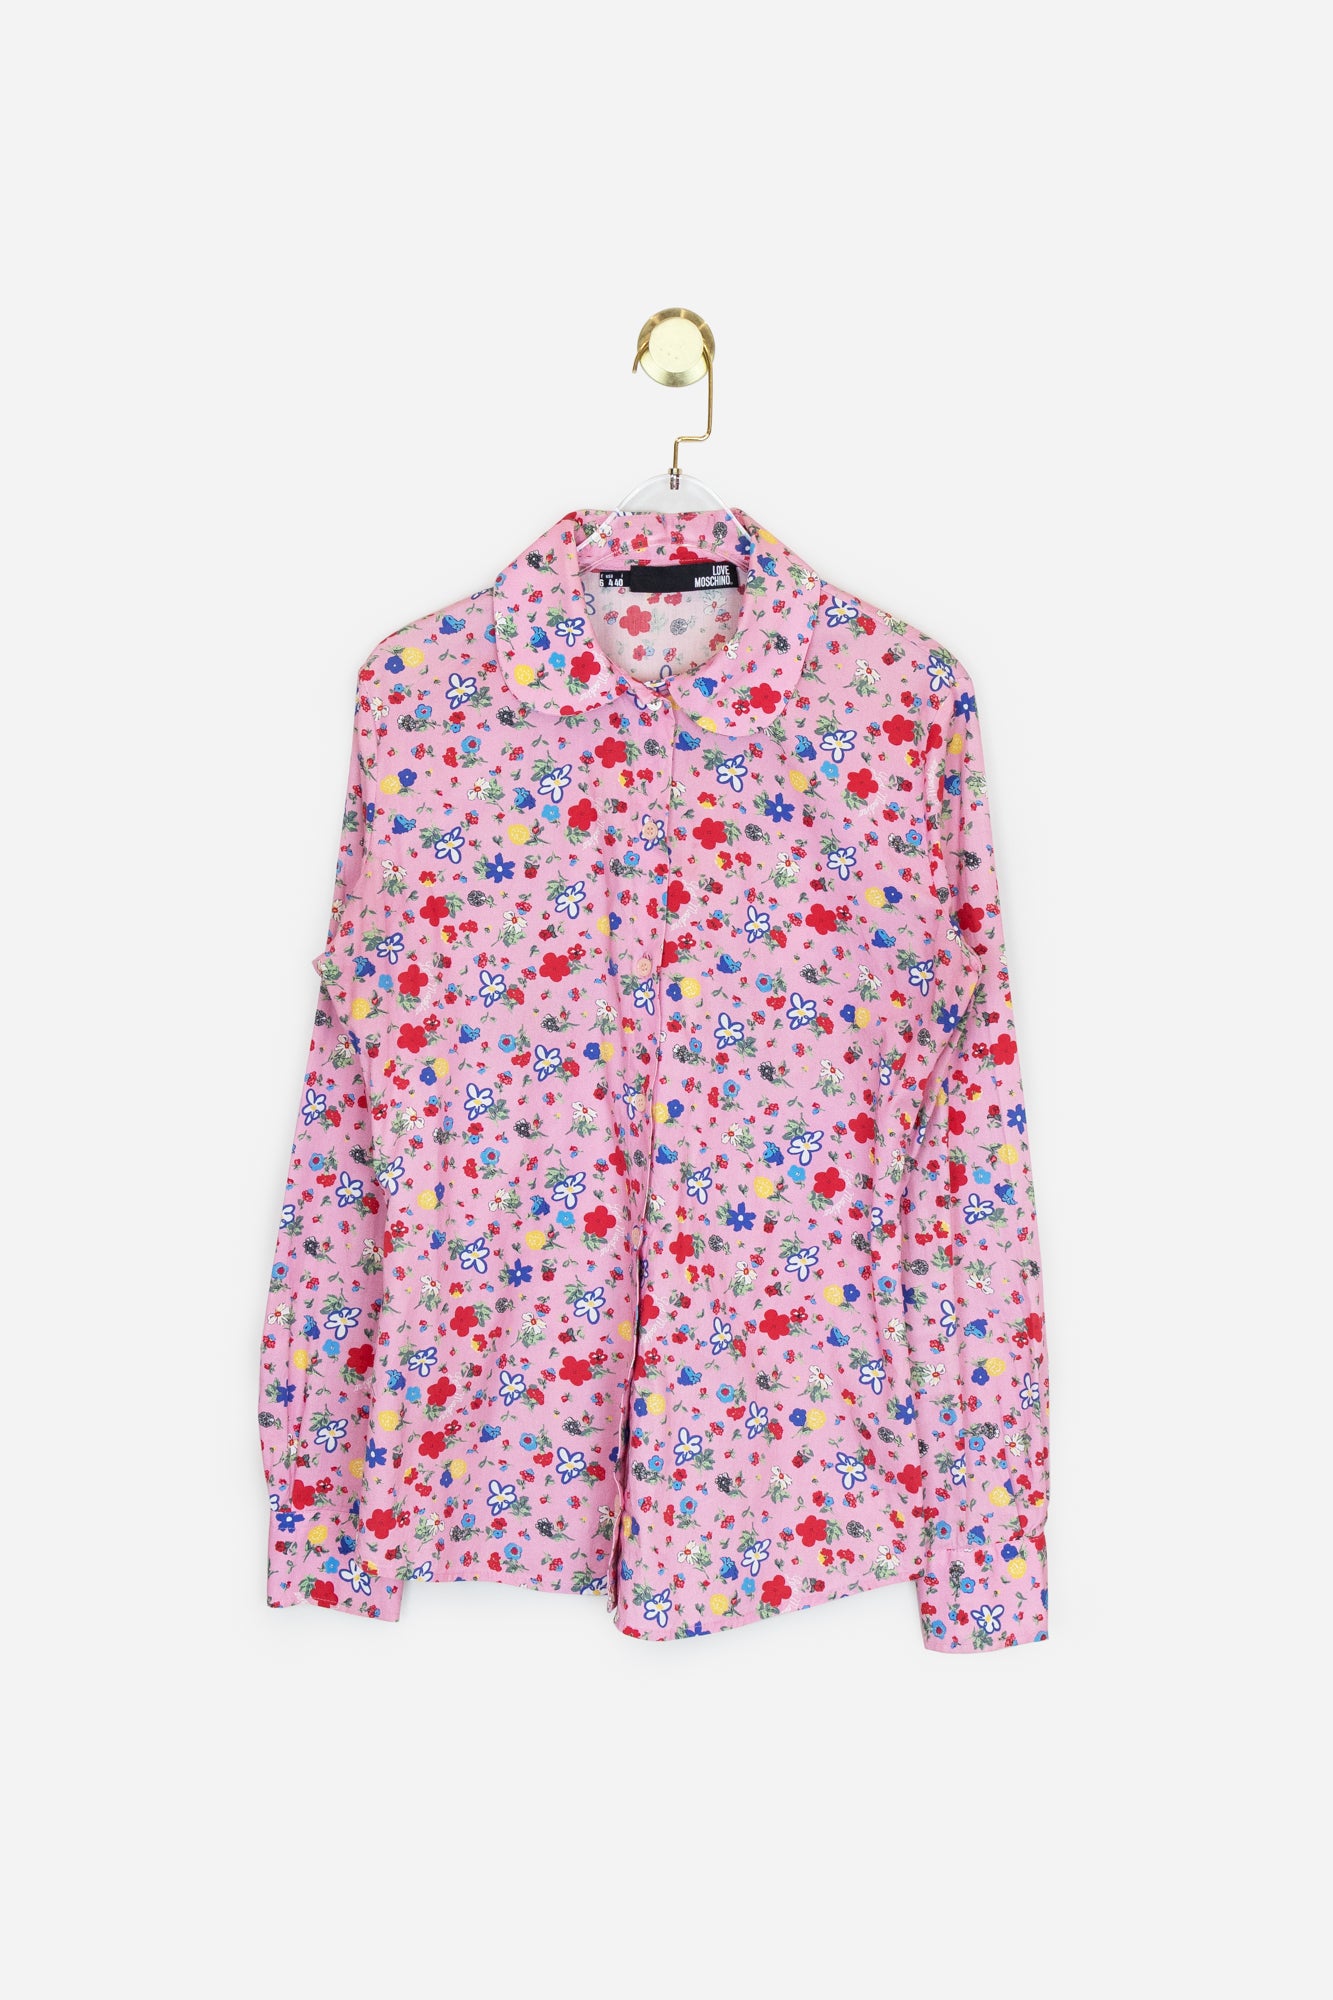 Pink Floral Print Button Up Shirt